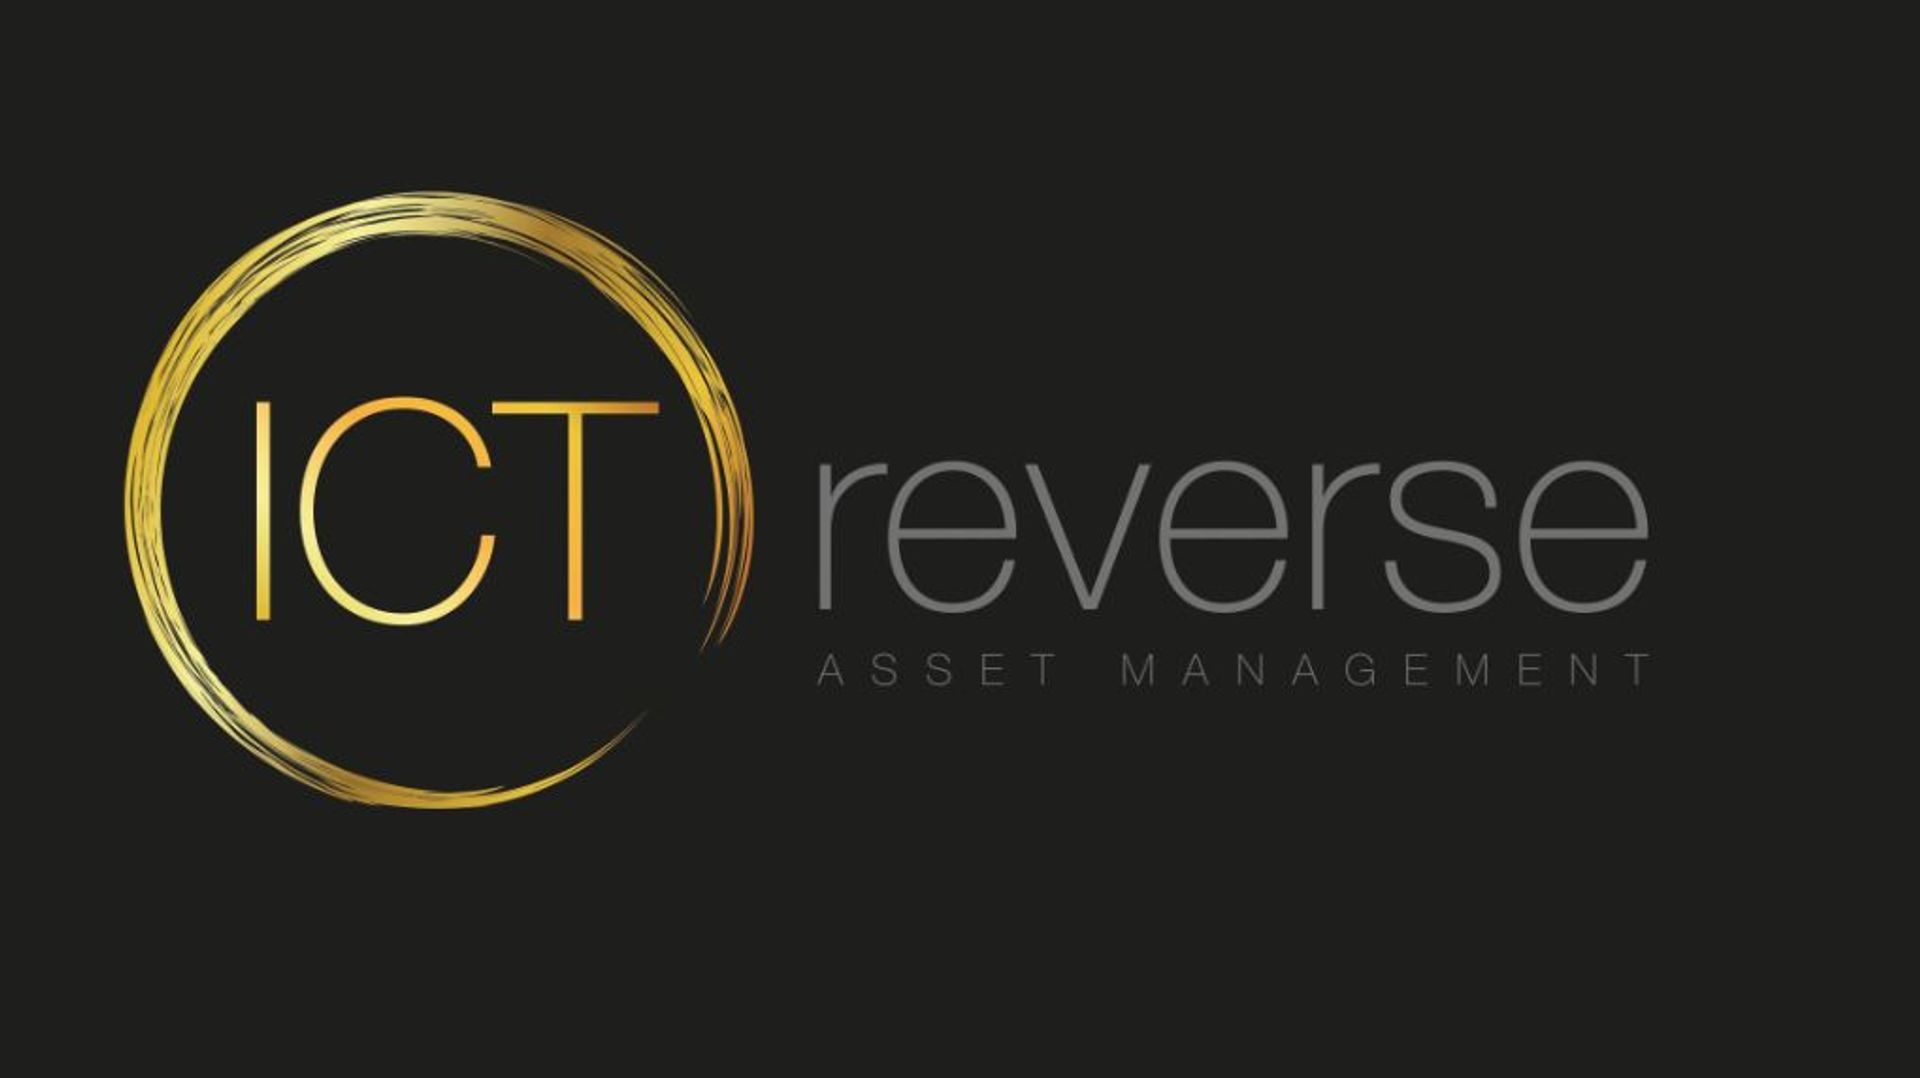 ICT Reverse Asset Management Ltd